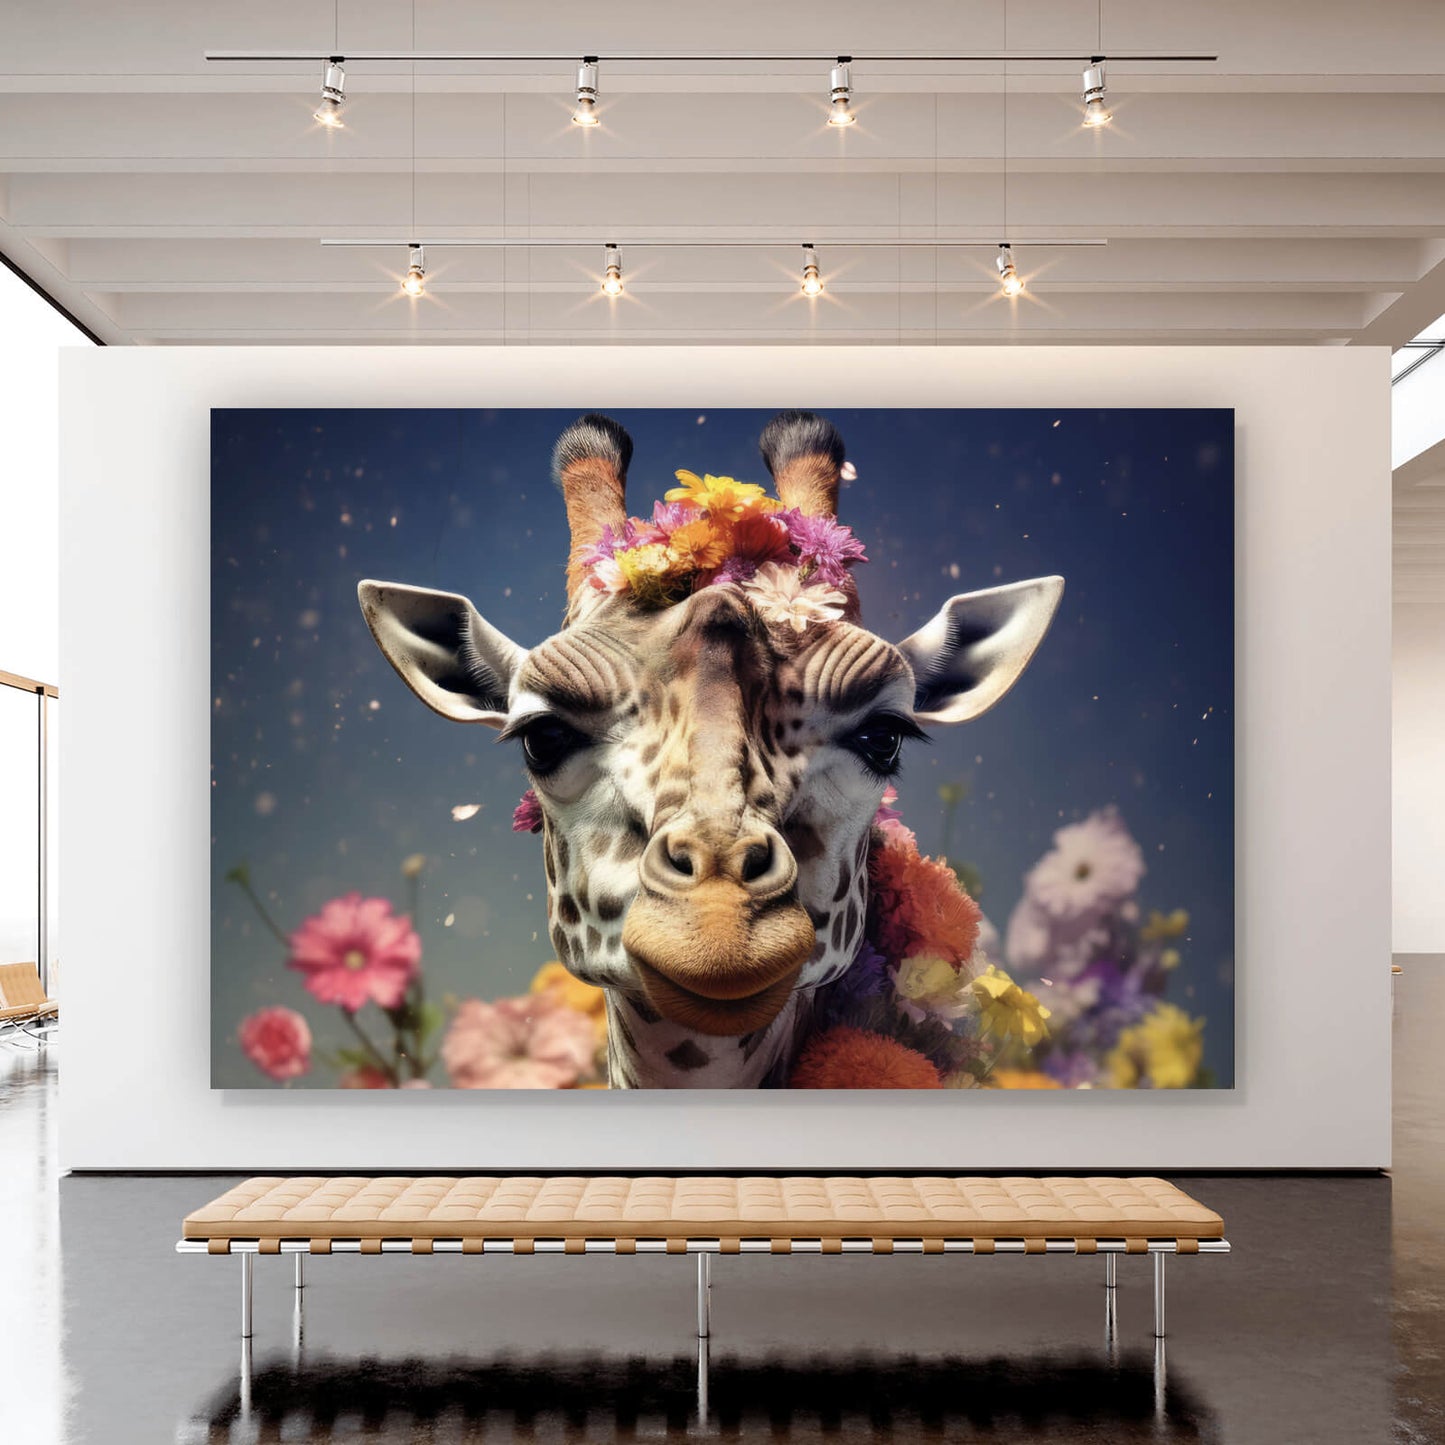 Leinwandbild Giraffe mit Blumen Digital Art Querformat